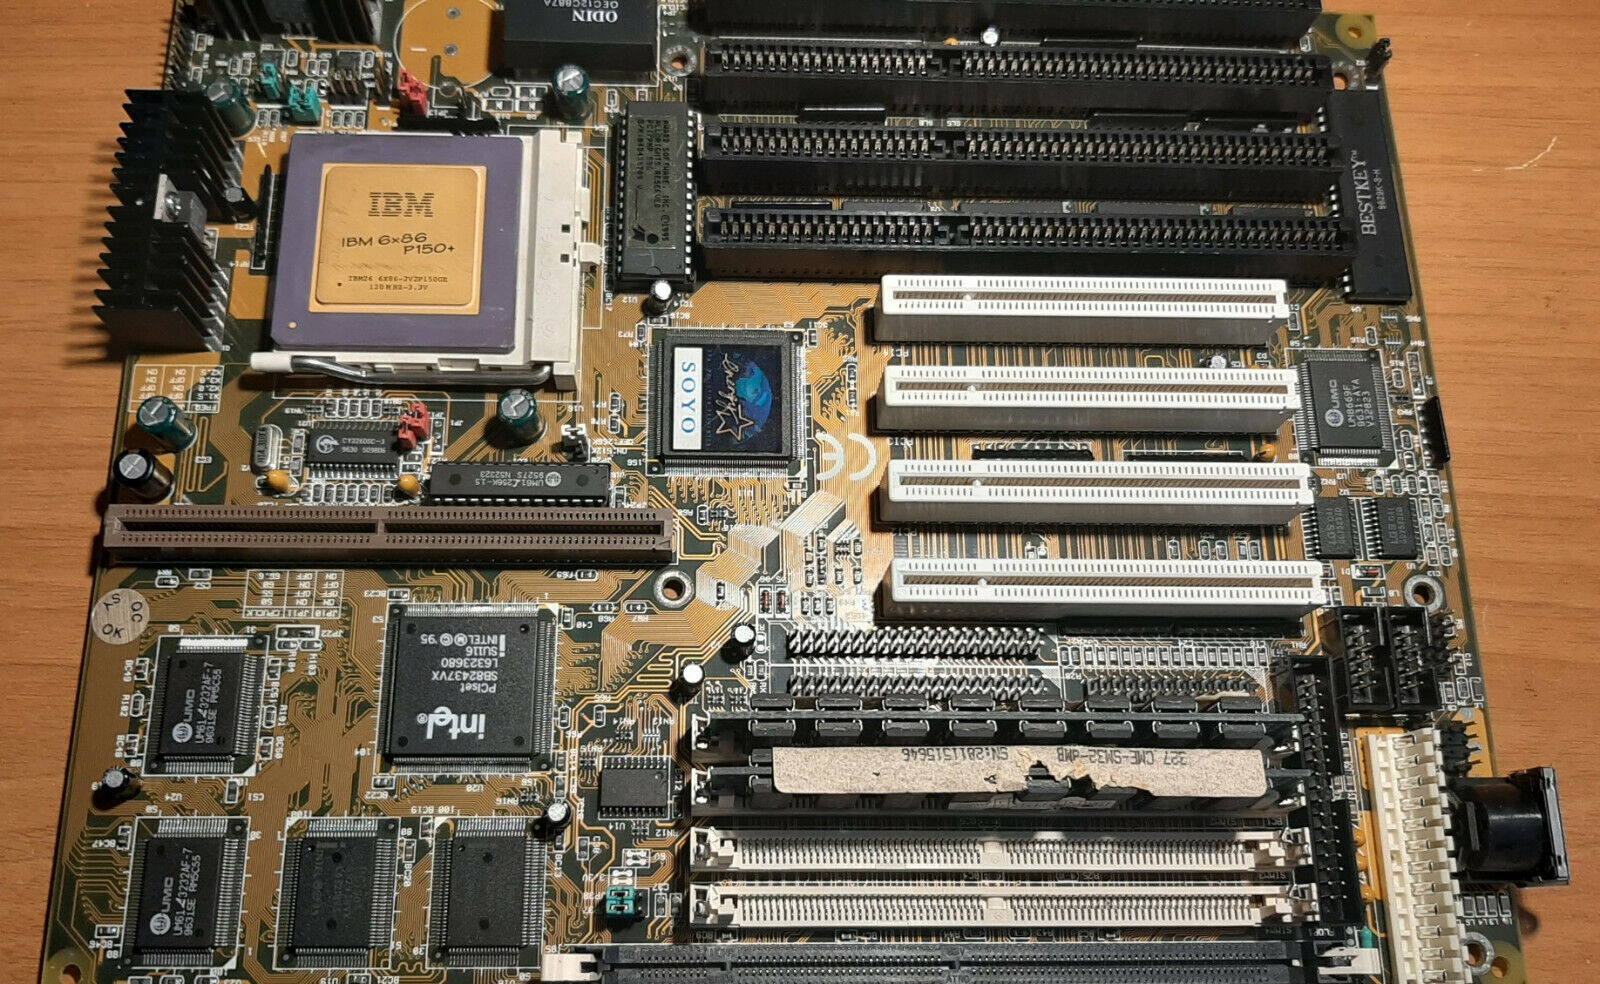 Soyo 5VA2 + IBM 6x86 P150+ + 16MB Ram